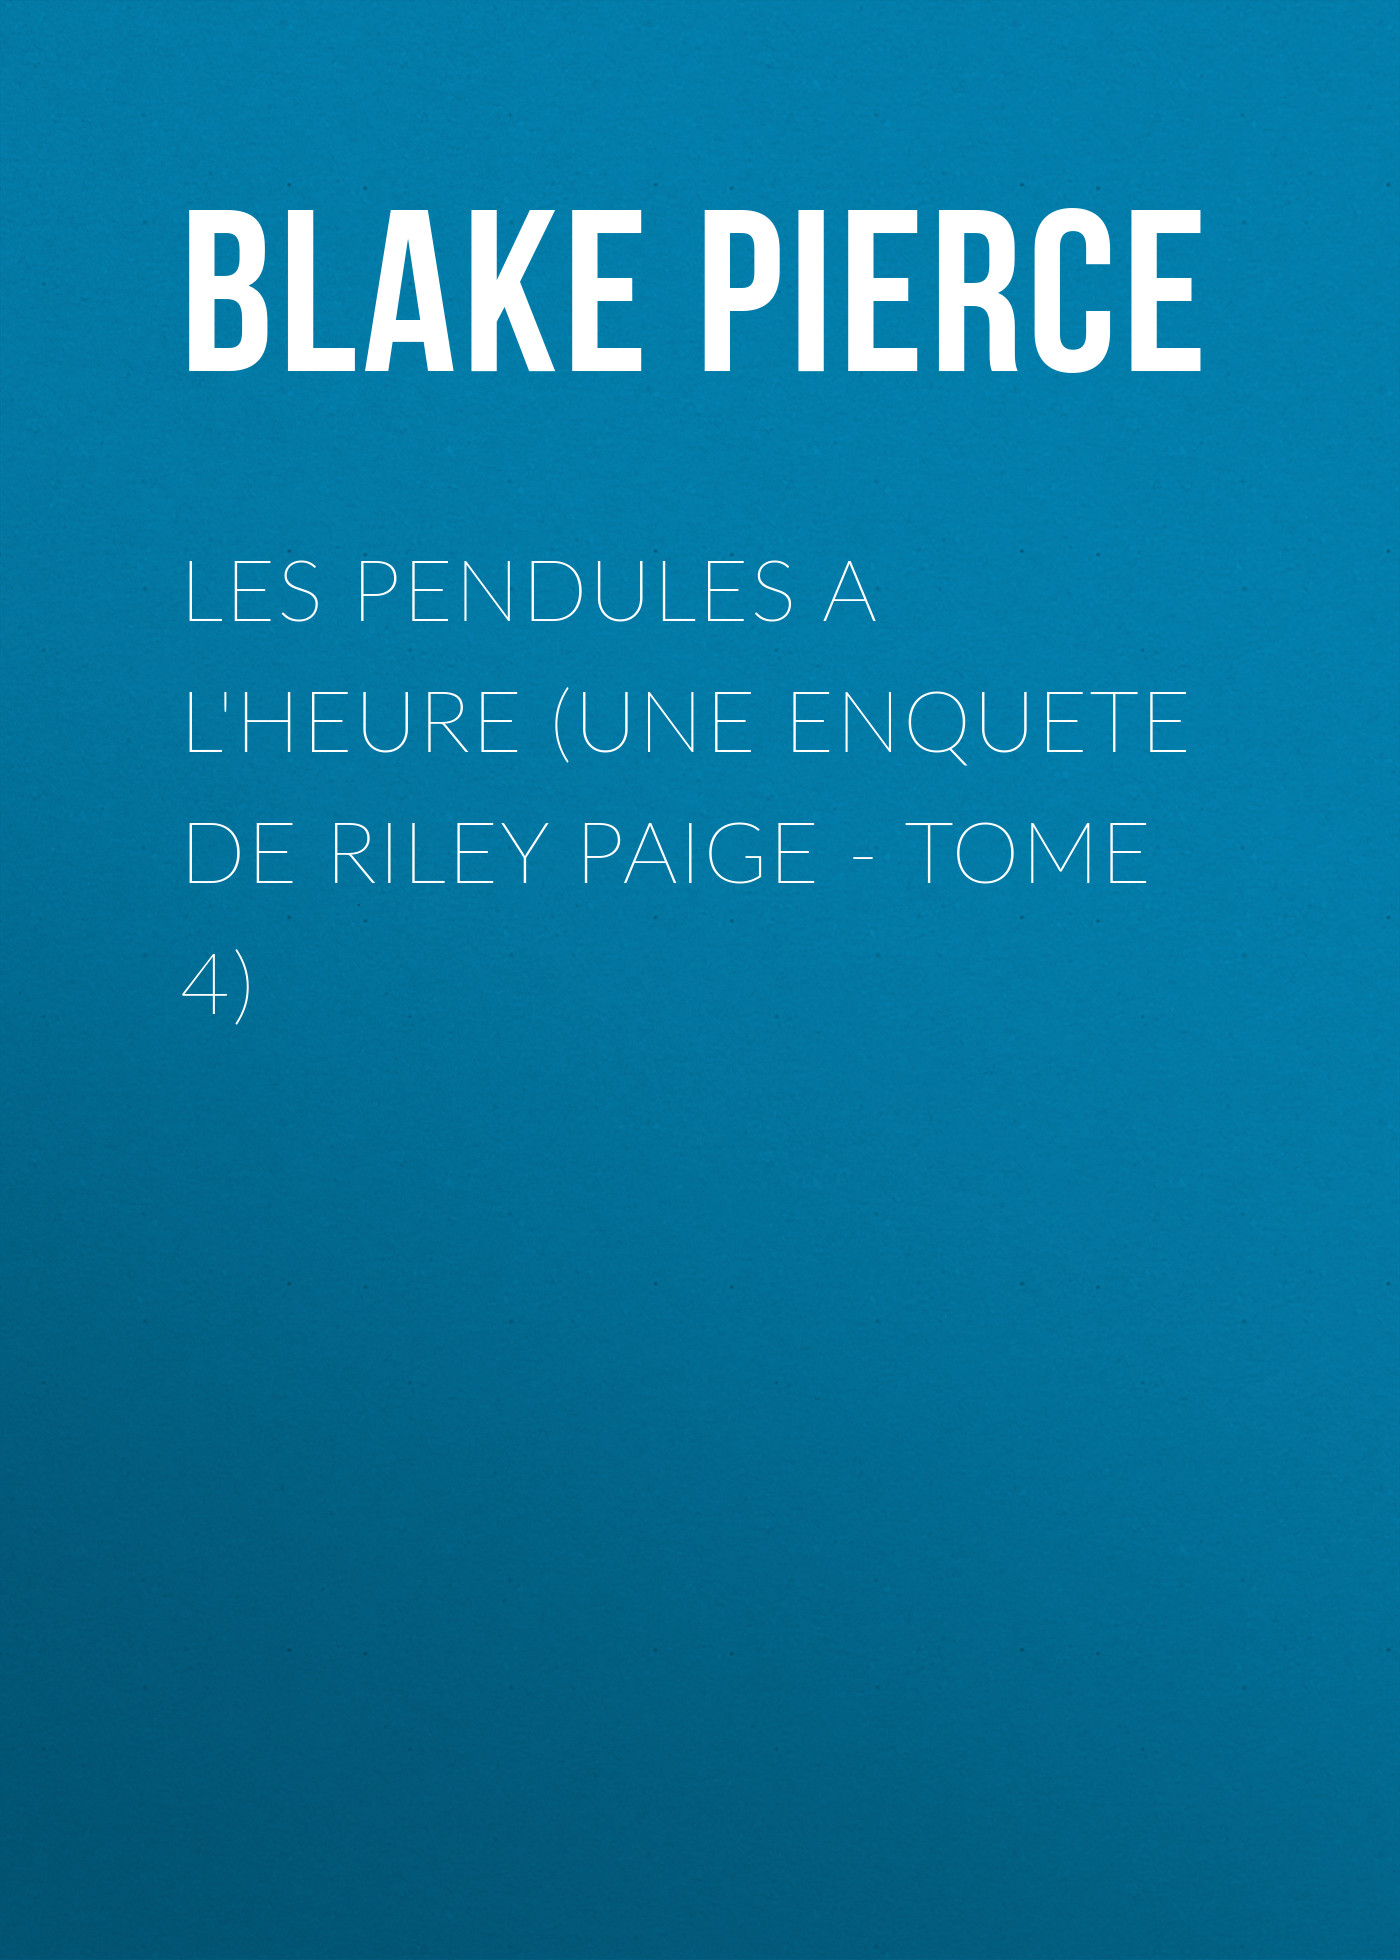 Скачать Les Pendules a l'heure (Une Enquete de Riley Paige - Tome 4) - Blake Pierce